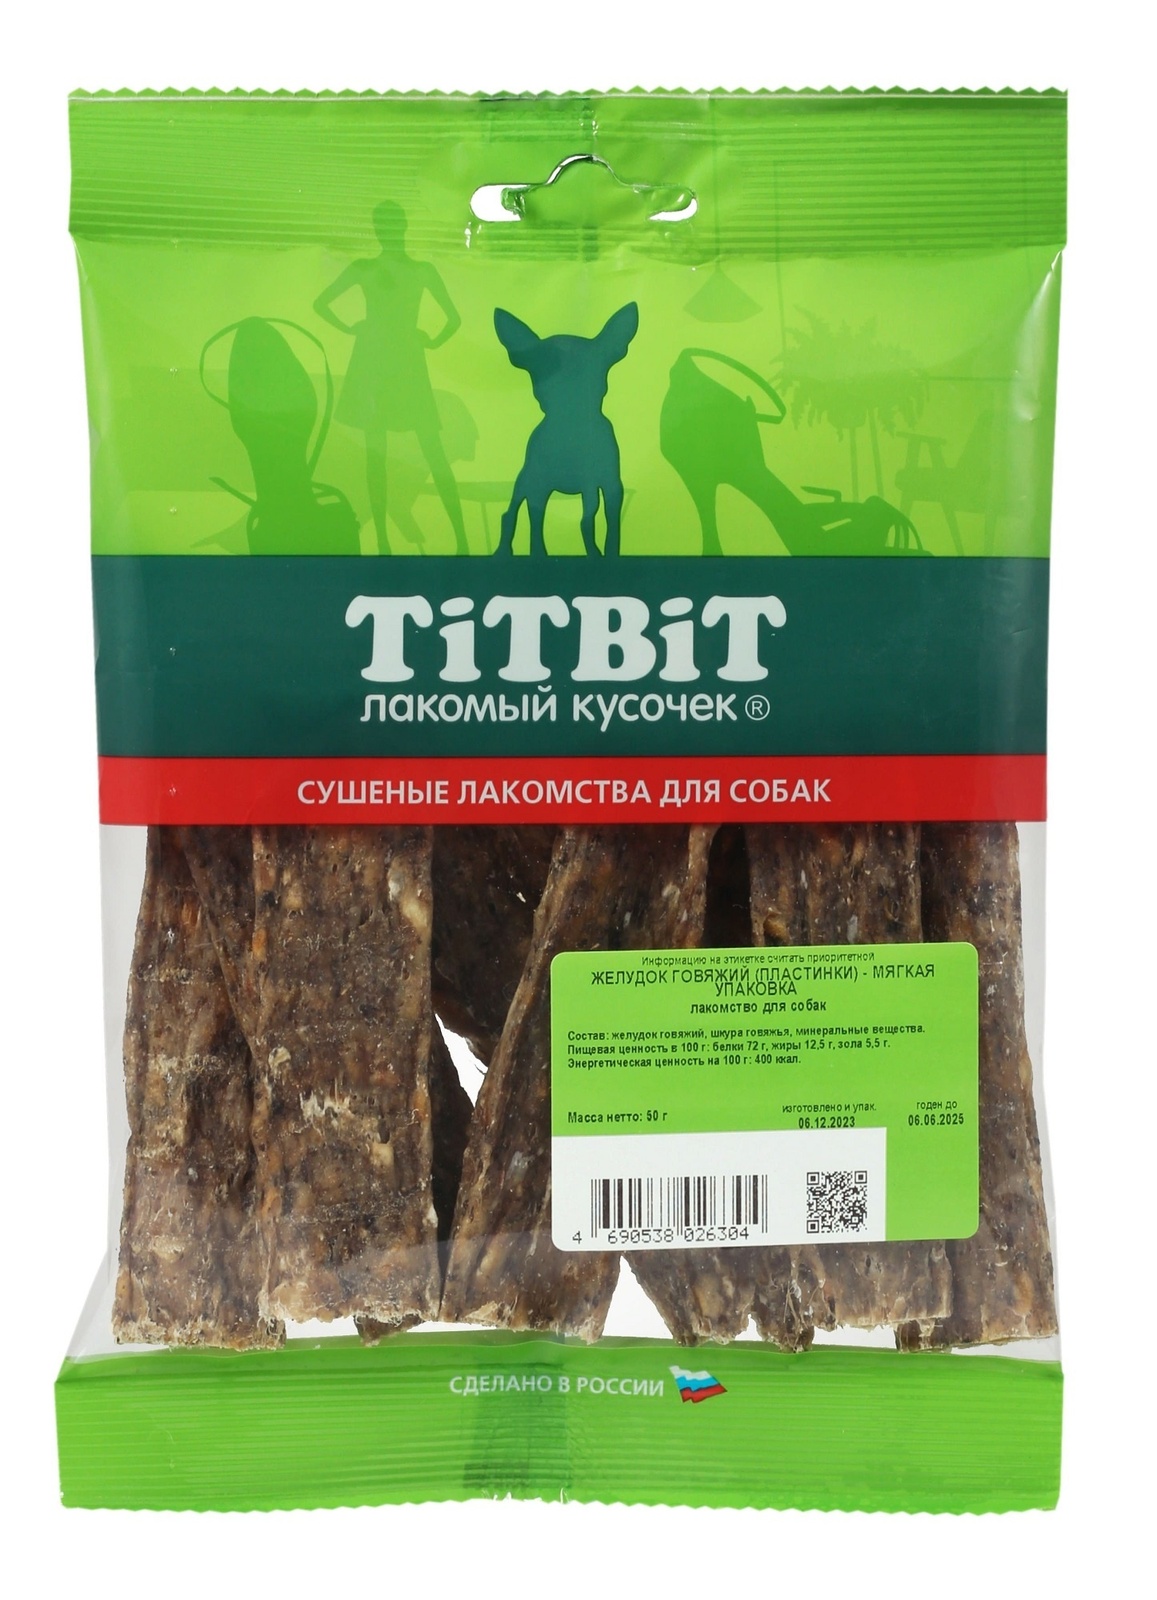 TiTBiT TiTBiT желудок говяжий (пластинки) - мягкая упаковка (50 г) titbit titbit шашлычок говяжий мягкая упаковка 126 г